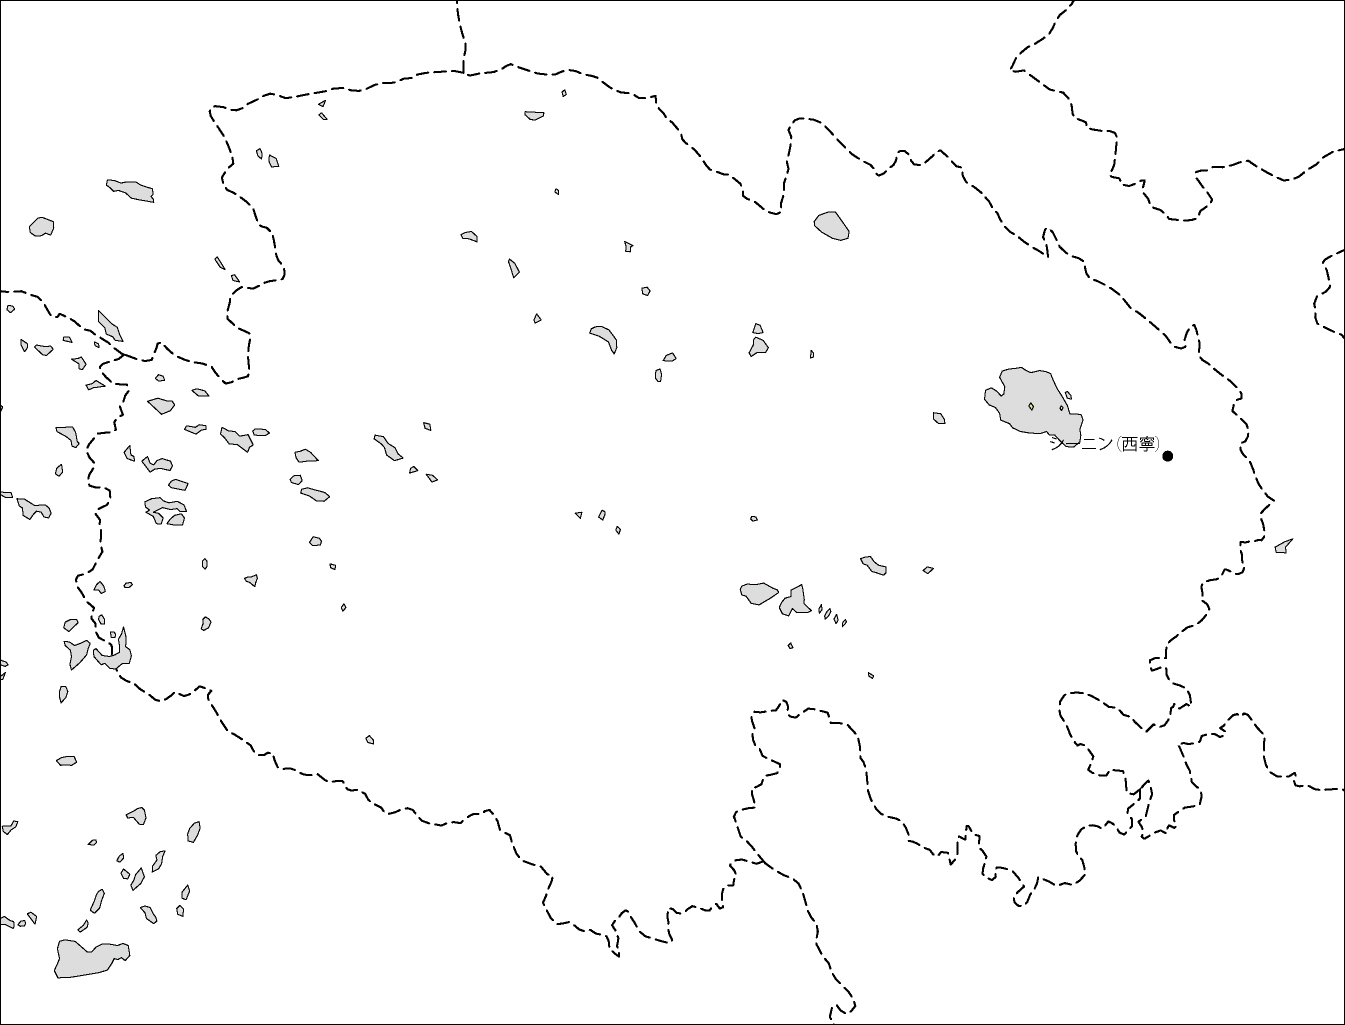 青海省白地図(省都あり)のフリーデータの画像